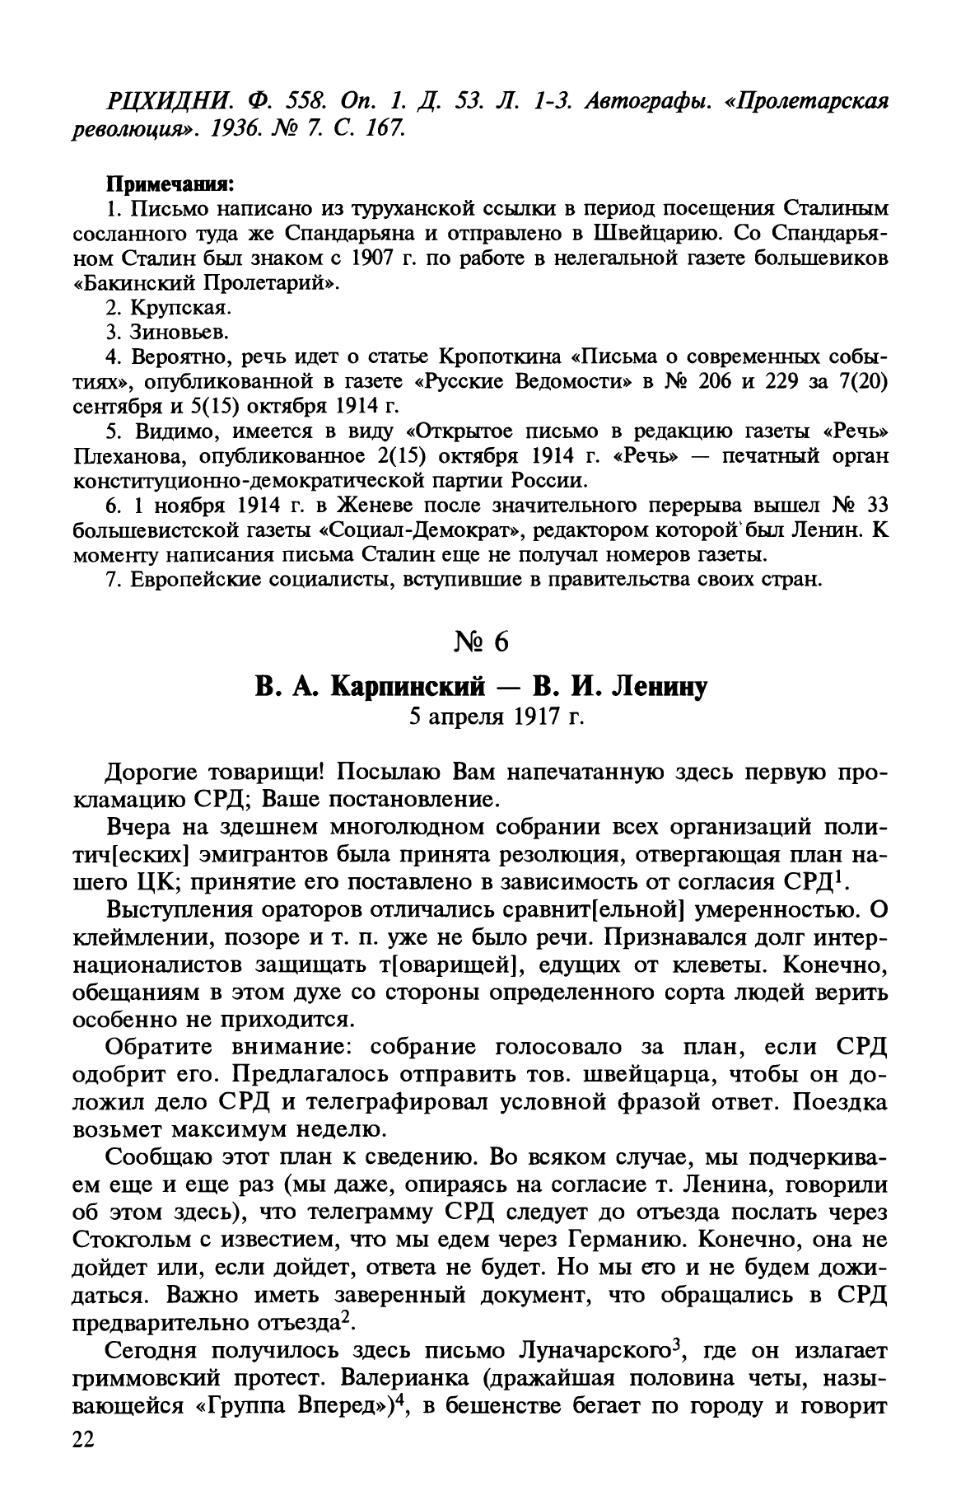 6. В. А. Карпинский — В. И. Ленину. 5 апреля 1917 г.